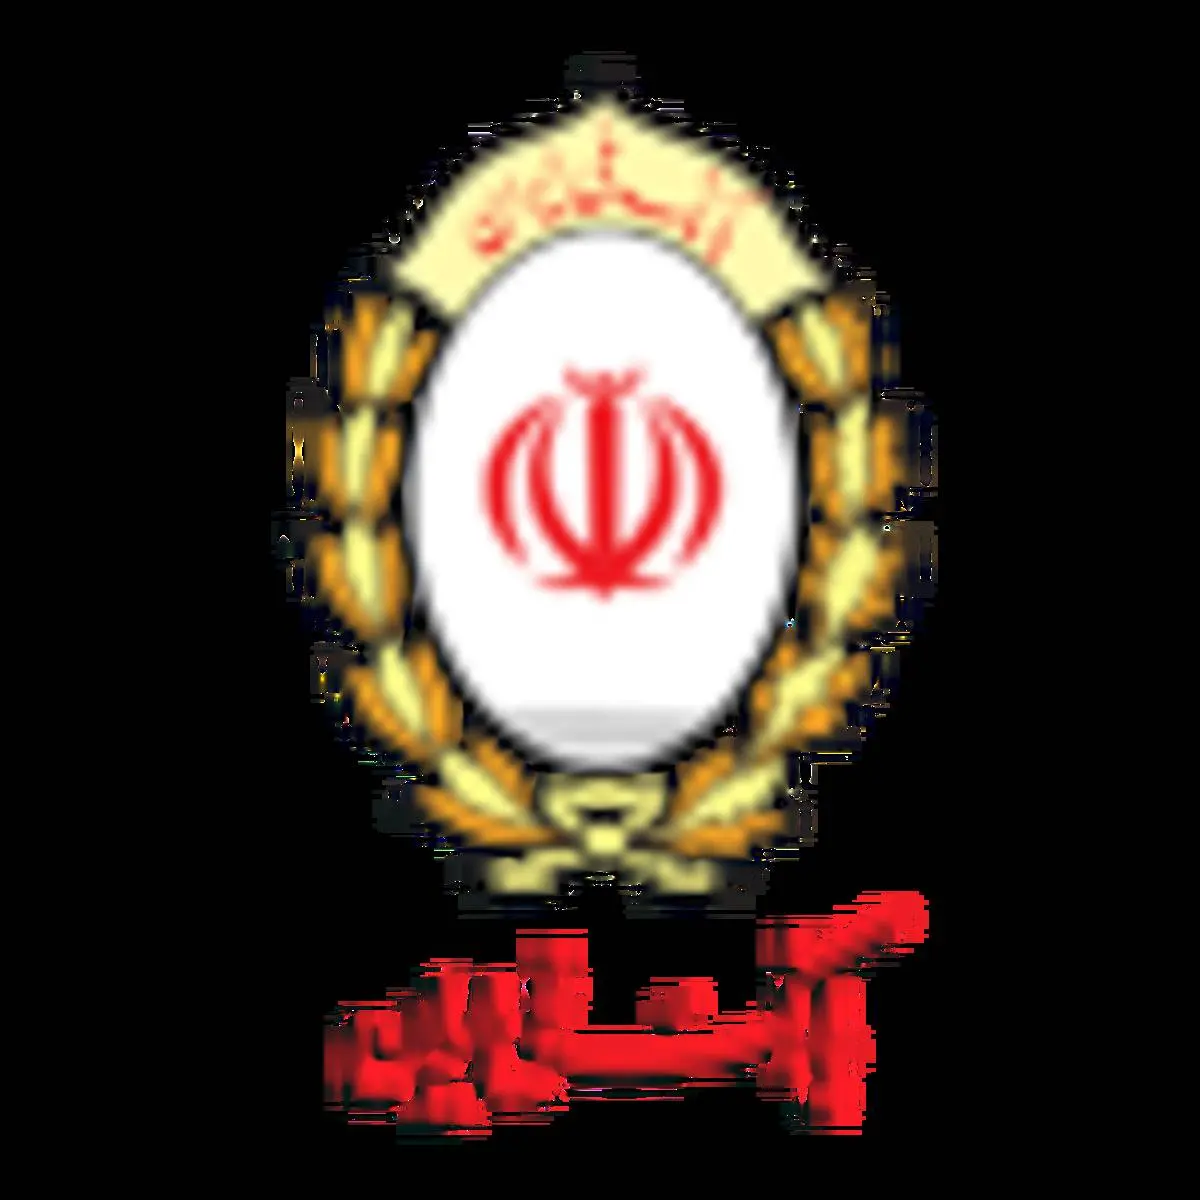  بانک ملی ایران حامی امداد در کشور است